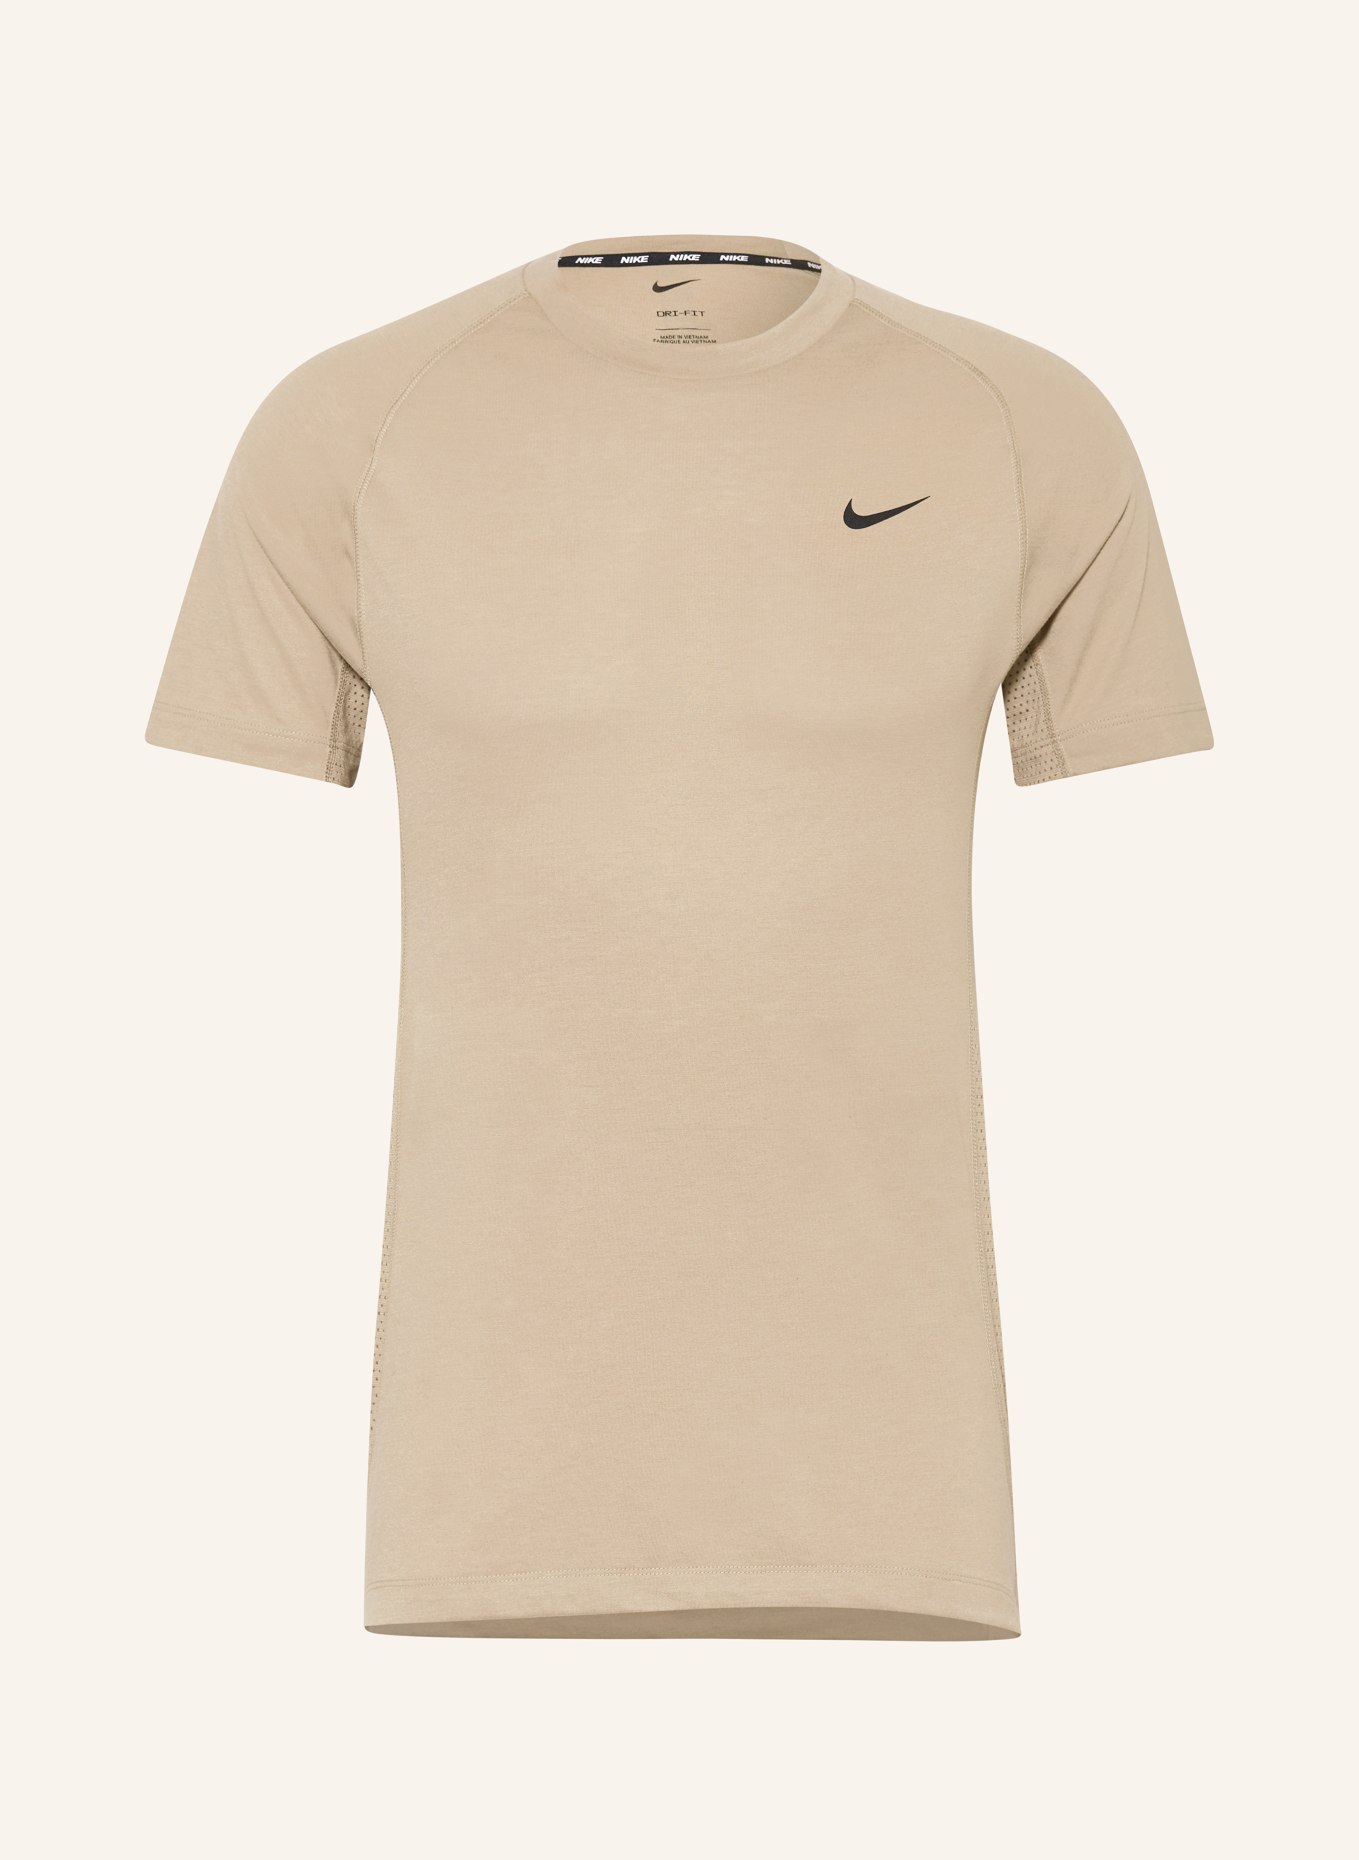 Nike T-shirt FLEX REP DRI-FIT, Color: KHAKI (Image 1)